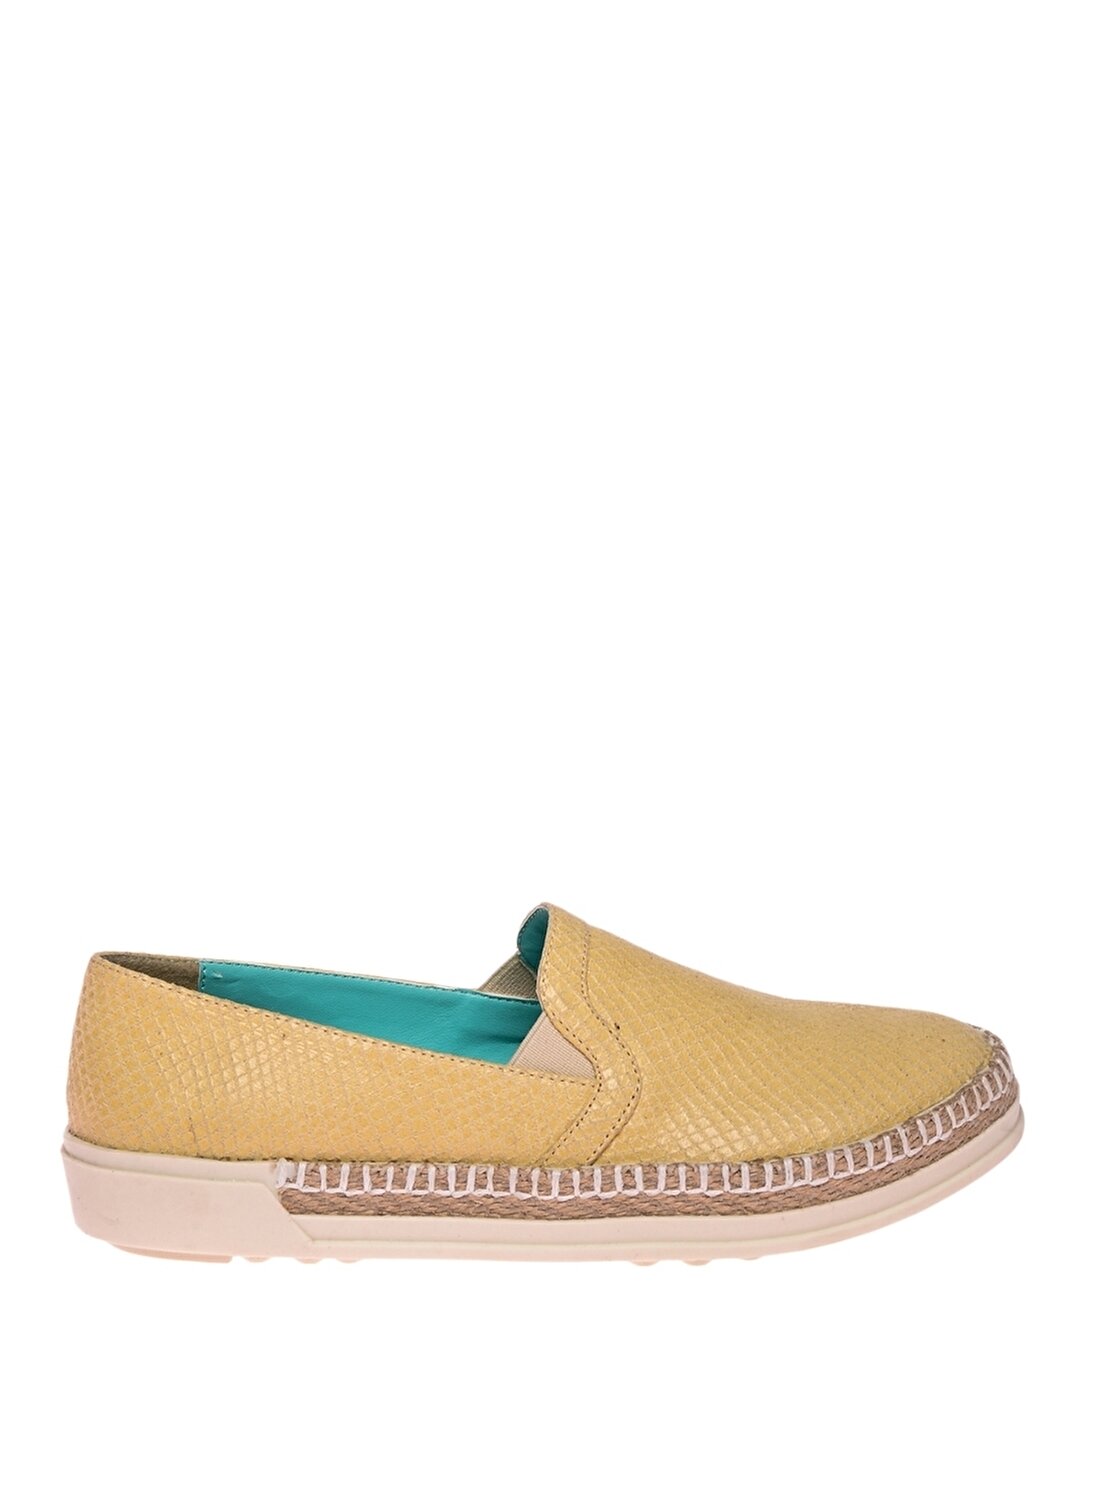 Limon Sarı Kadın Koşu Ayakkabısı |1SAT KL61-108